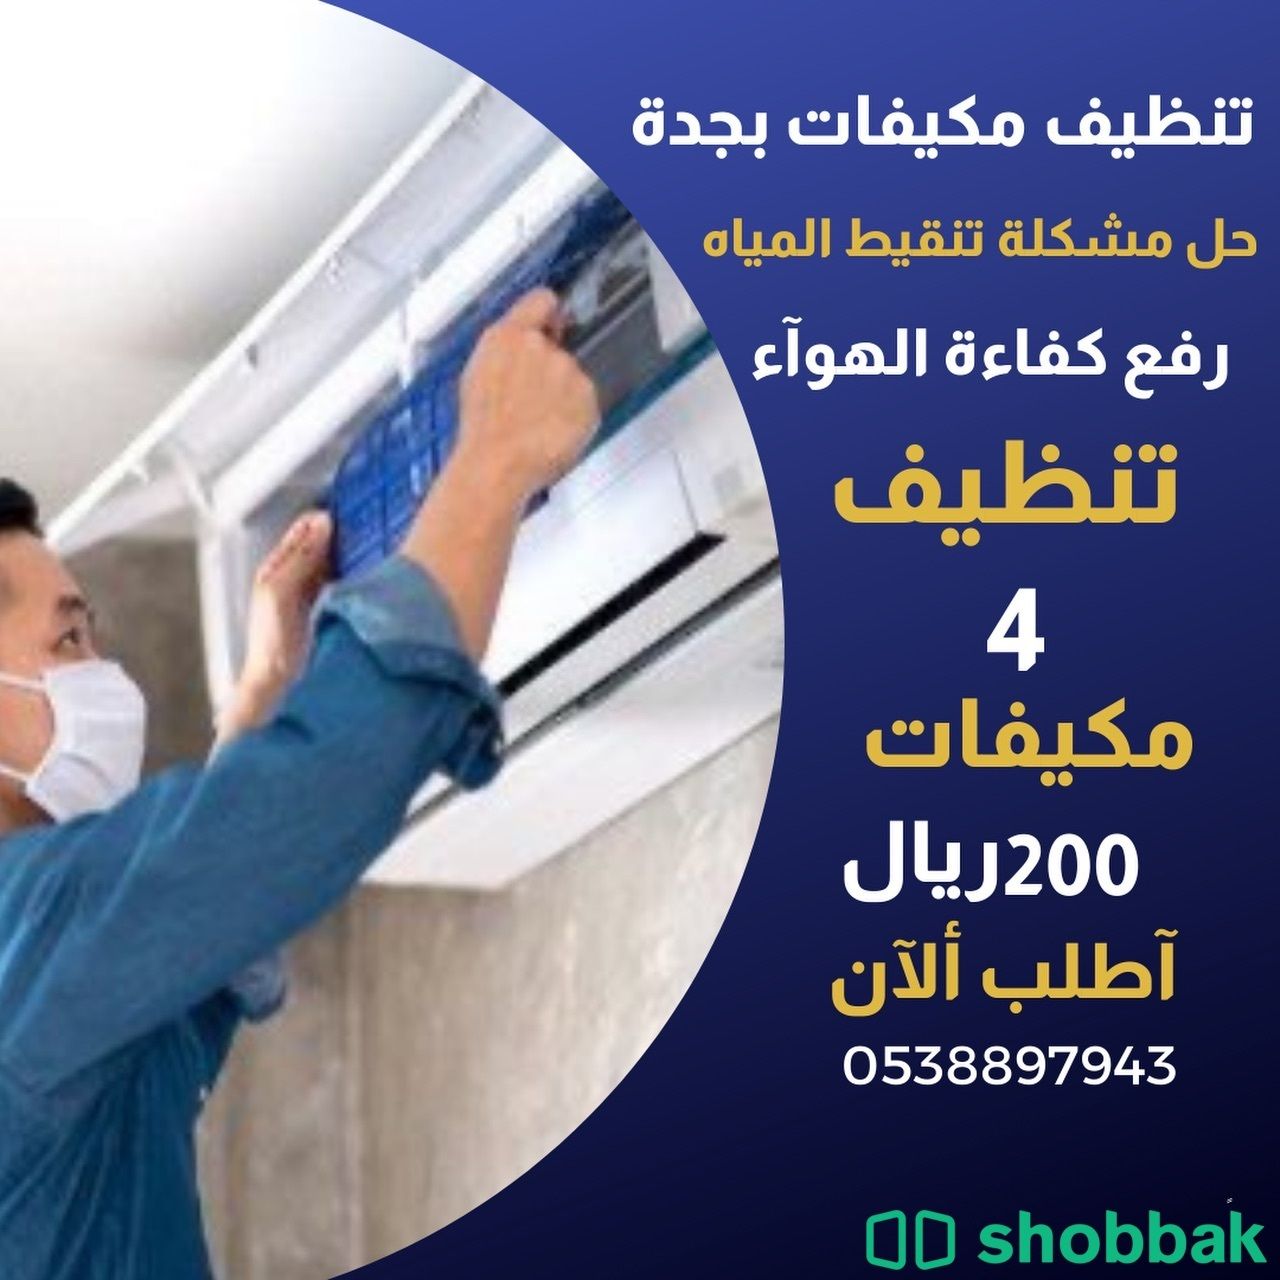 تنظيف مكيفات بجدة الشرق كلين Shobbak Saudi Arabia